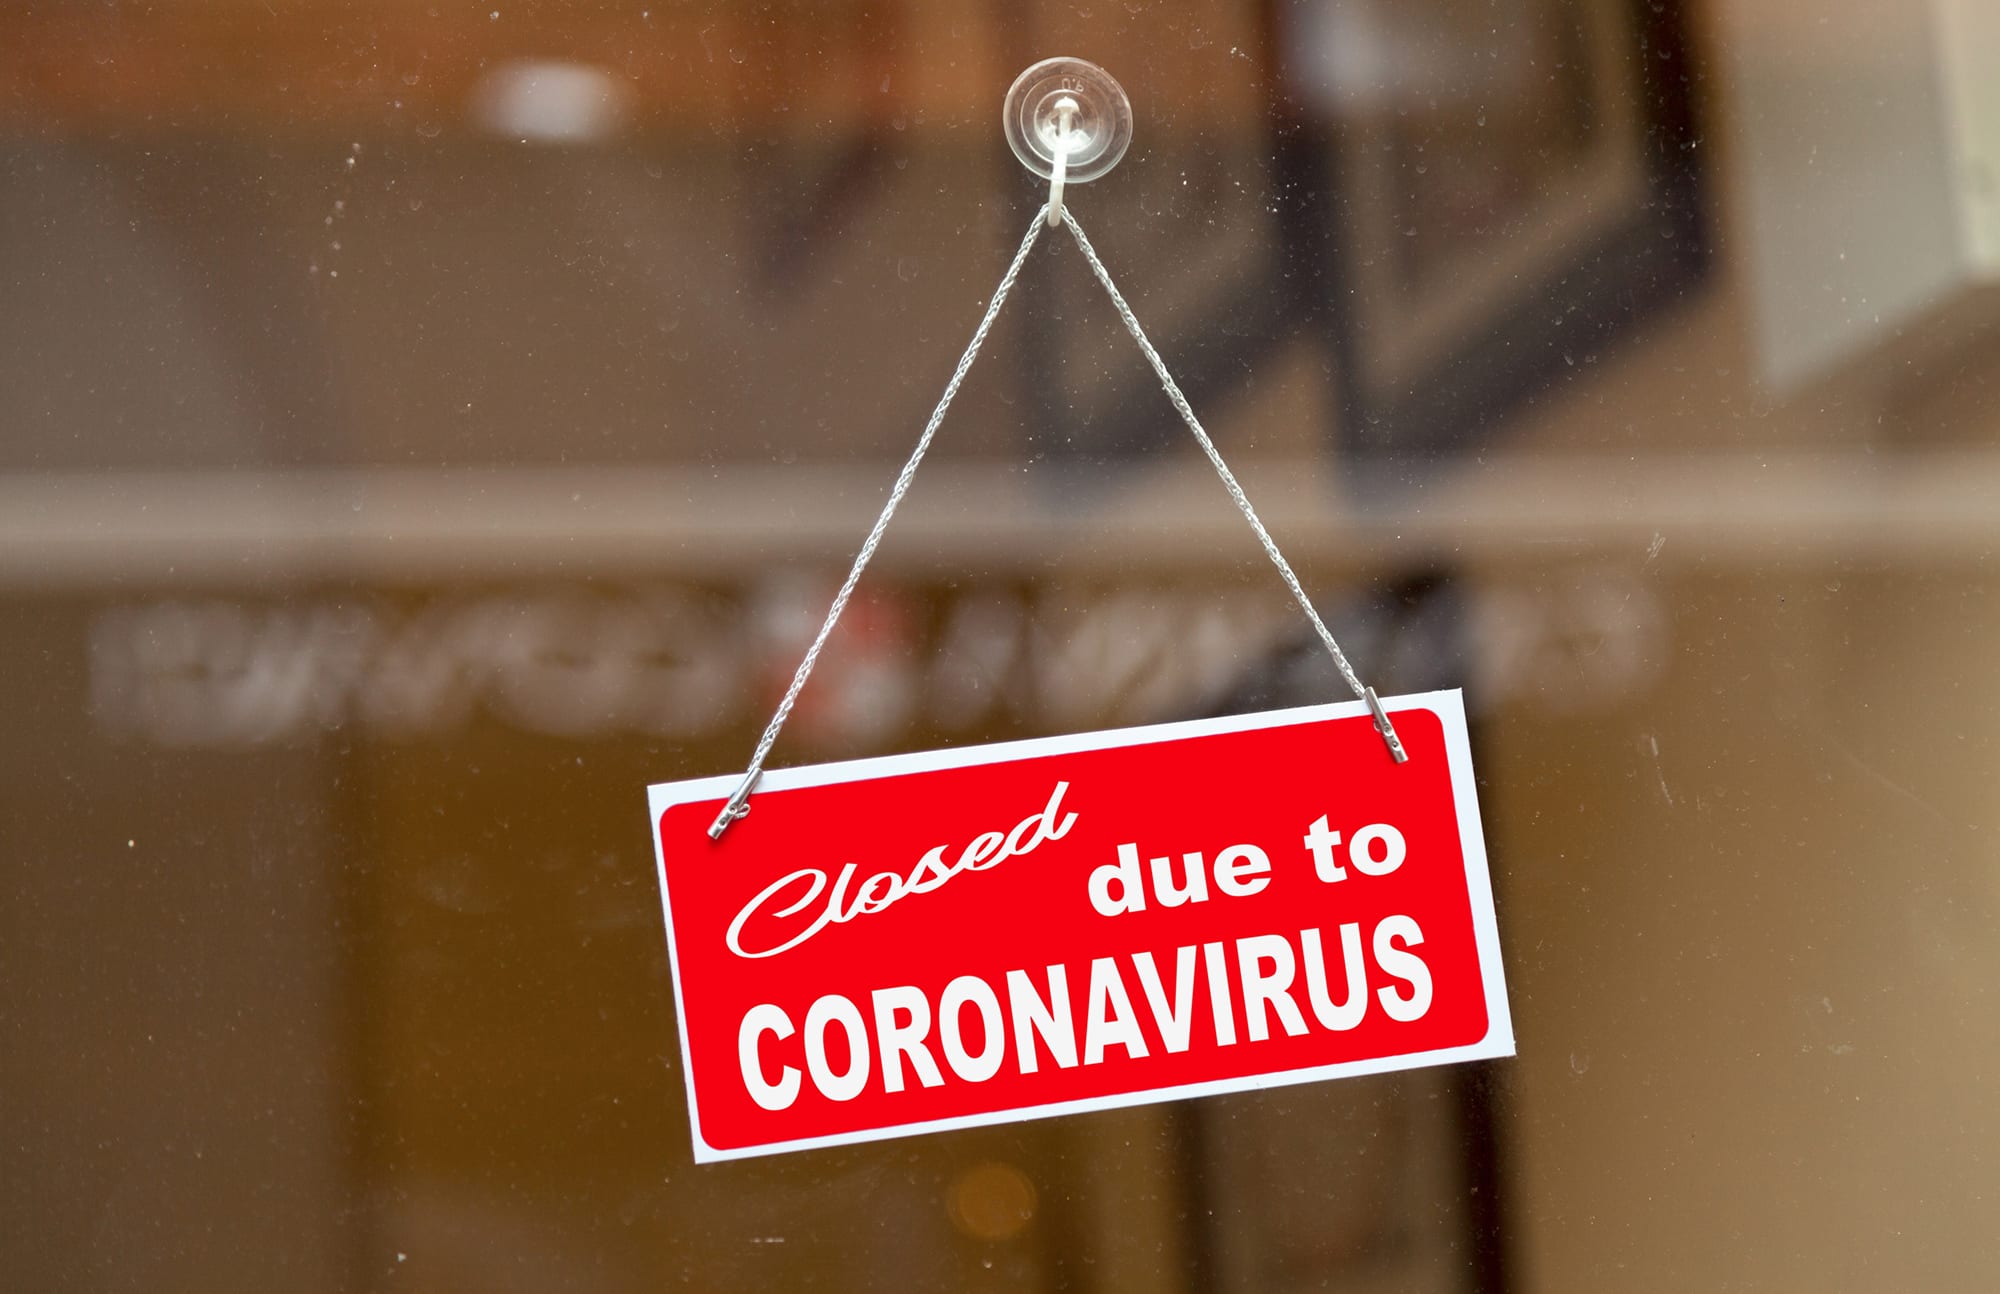 Closed due to coronavirus